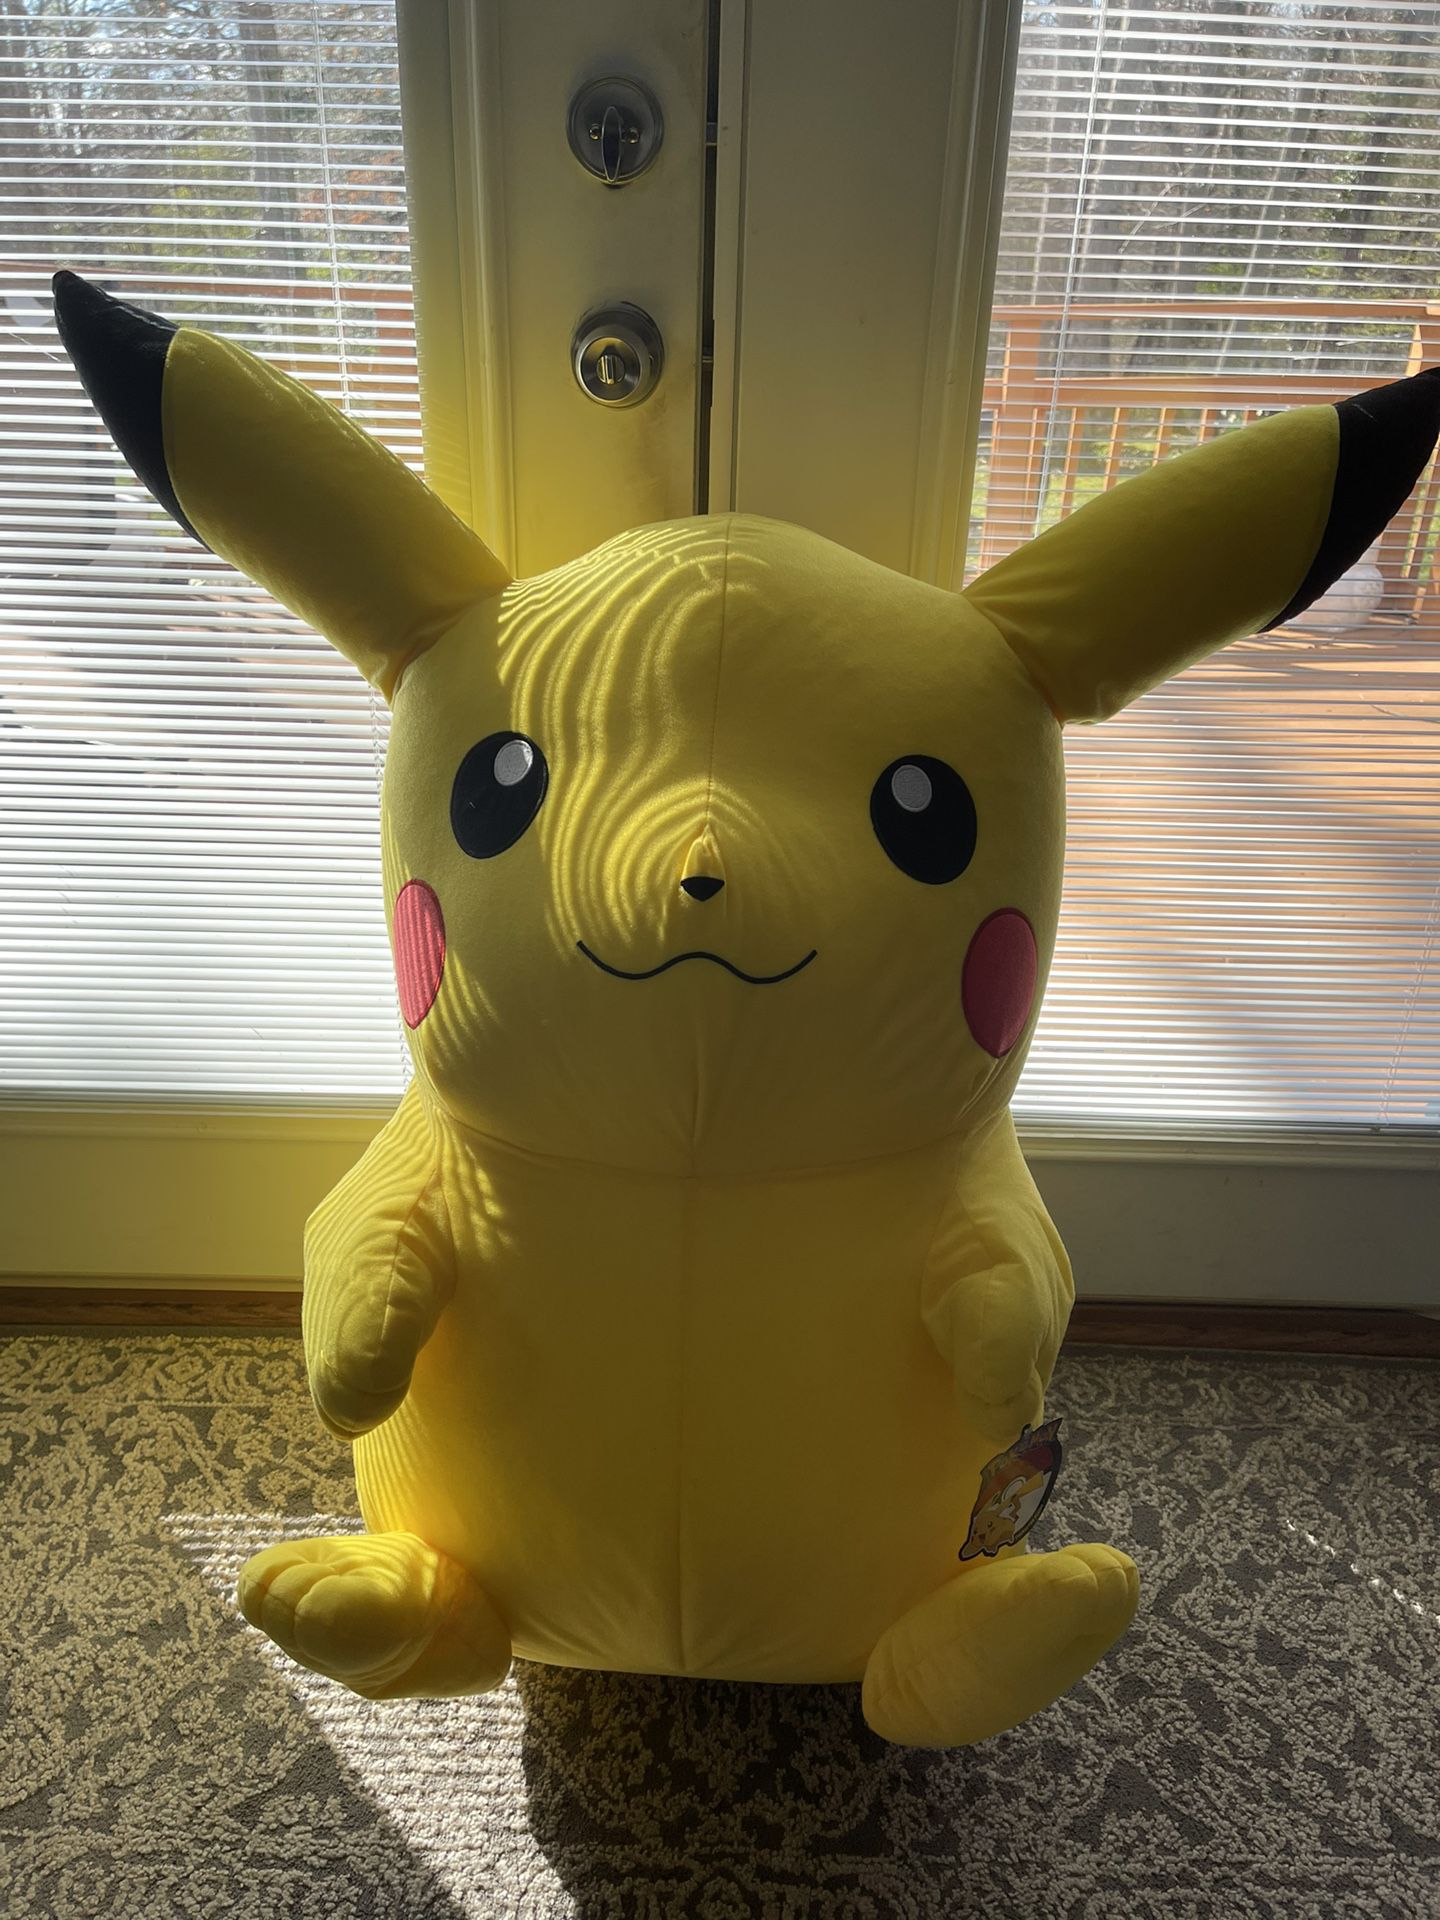 Brand New Pokémon Pikachu Giant Plush